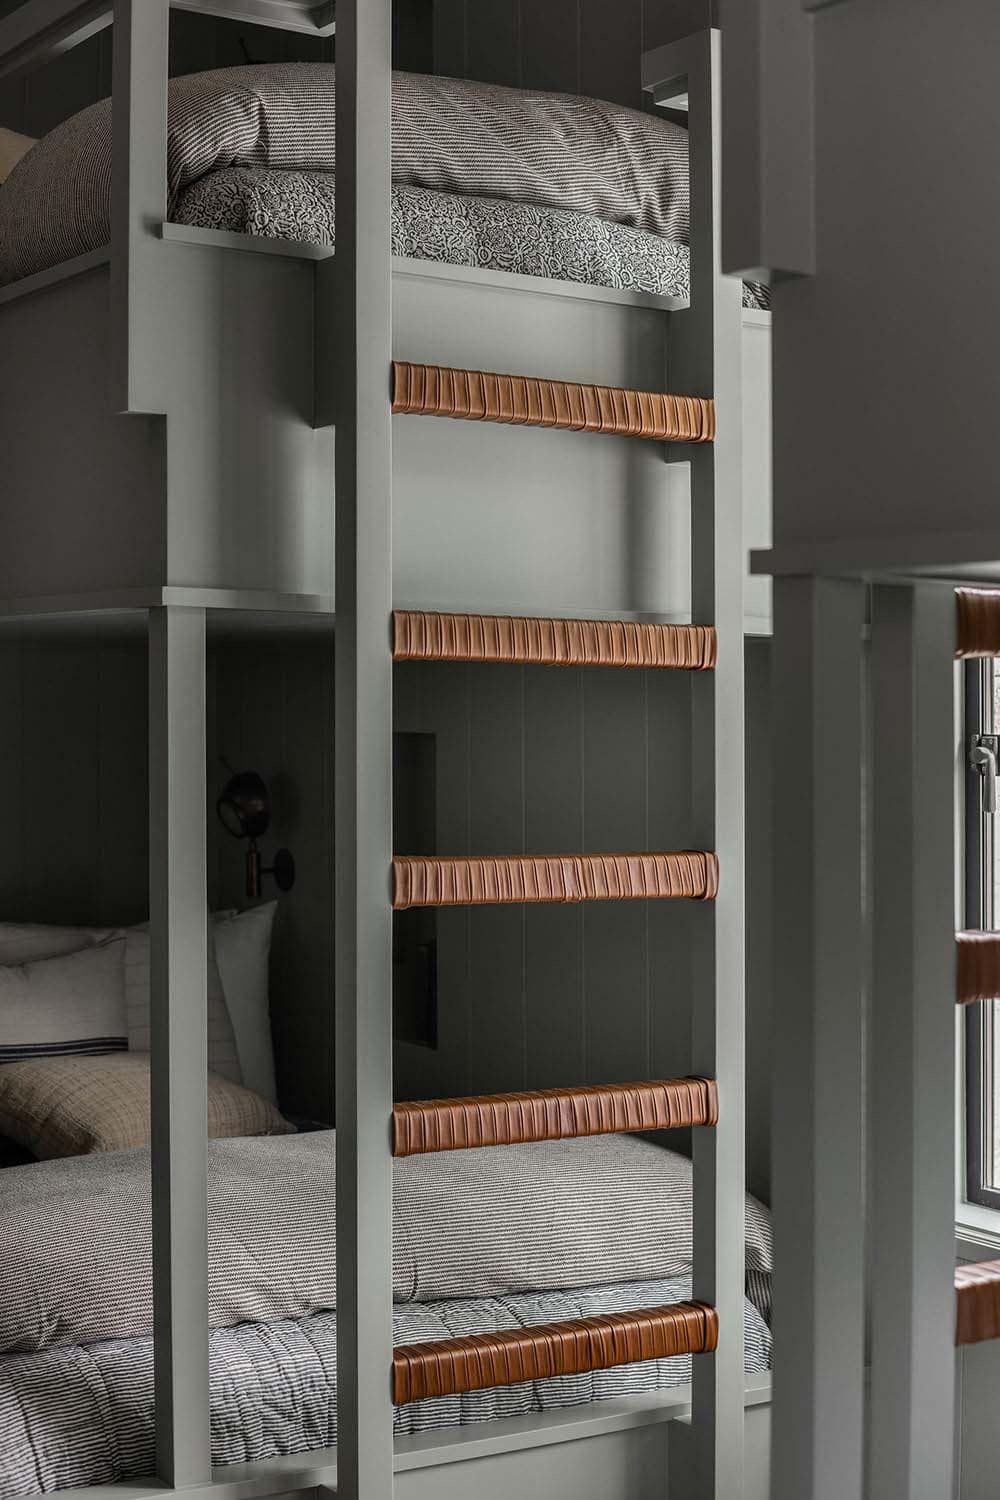 modern bunk bedroom